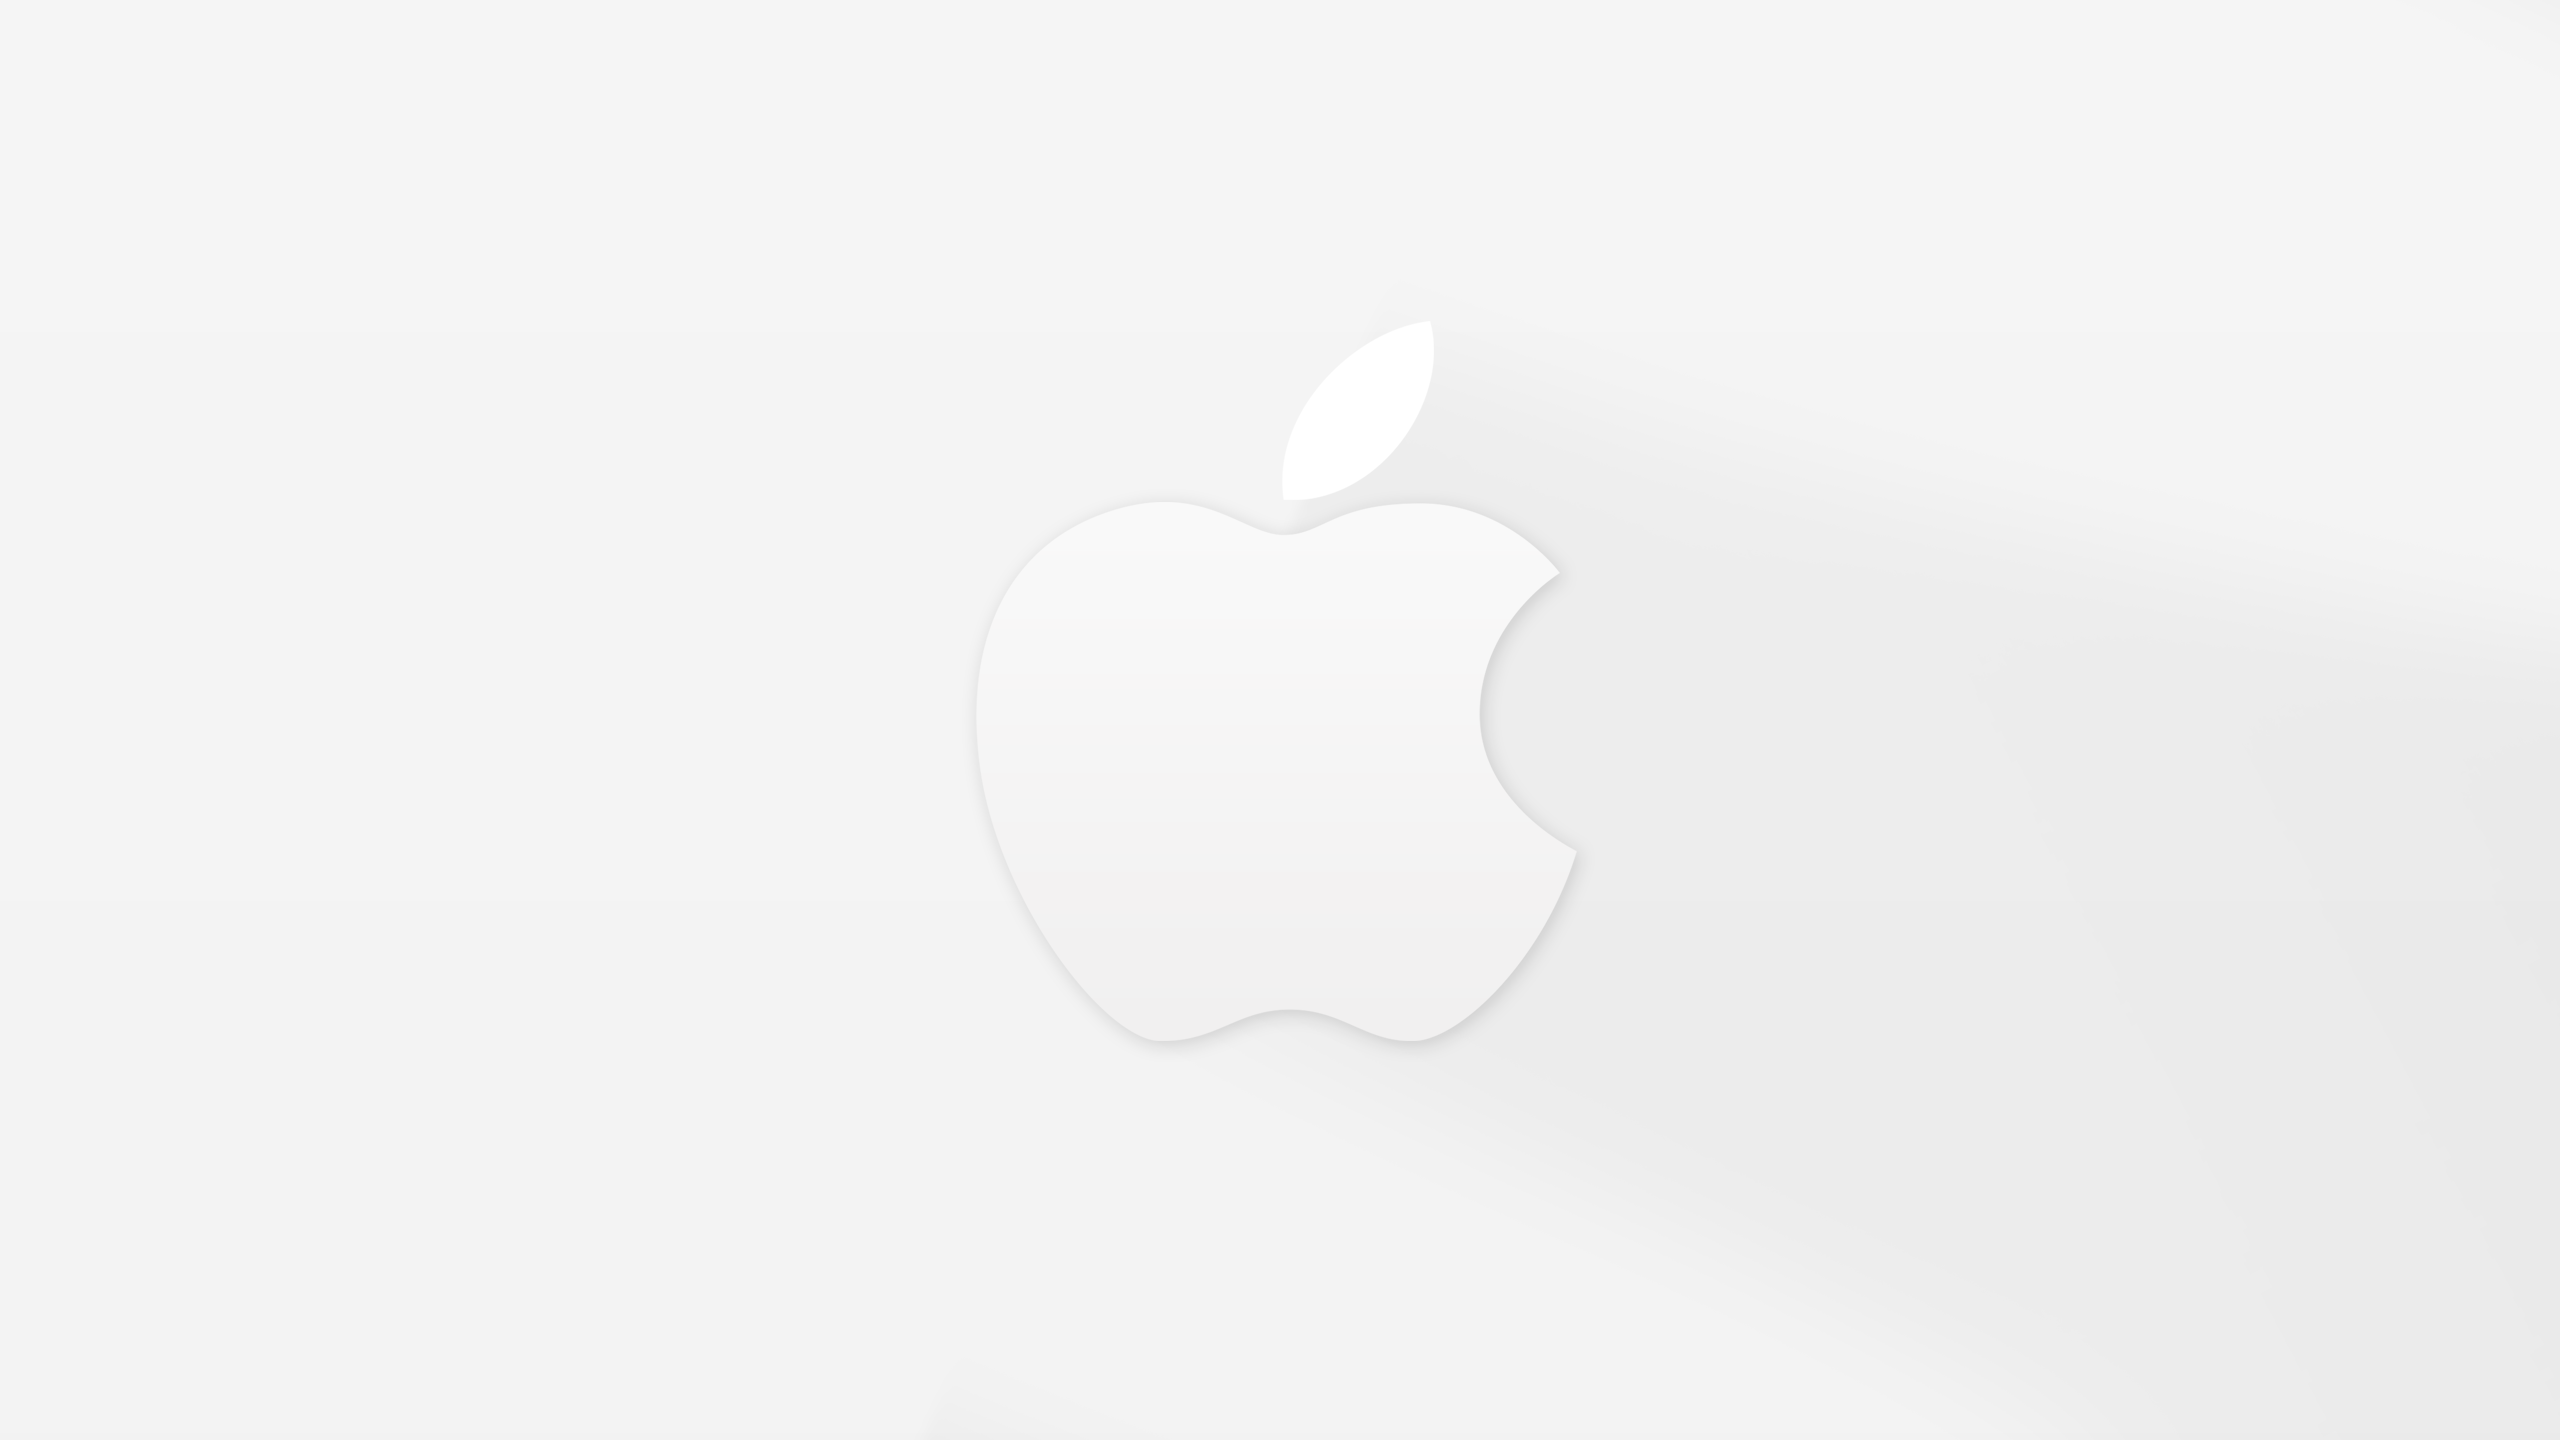 Скачать Retina-обои для iPhone, iPad и Mac на тему предстоящего анонса iPho...